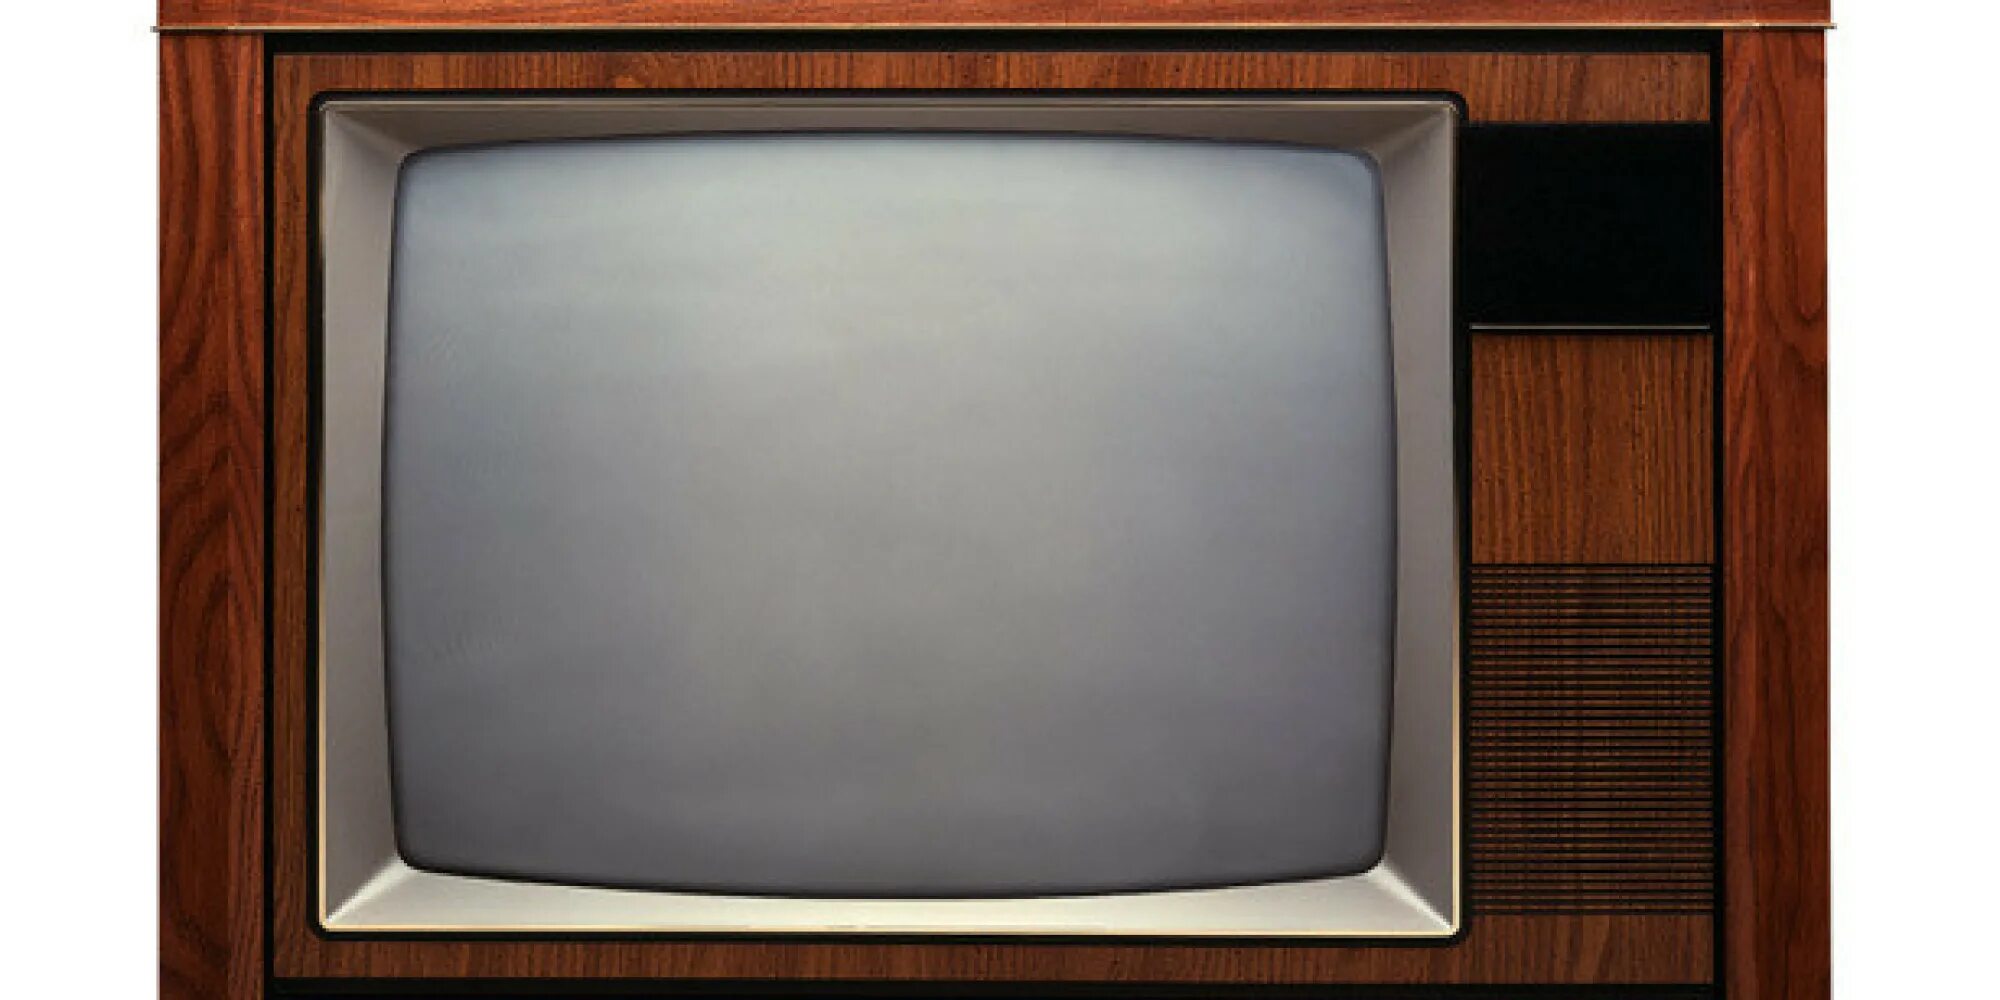 Телевизор рубин купить. Рубин 401 телевизор. Первый цветной телевизор Рубин 401. Телевизор Рубин 106 Рубин 401. Телевизор Рубин 401 год выпуска.